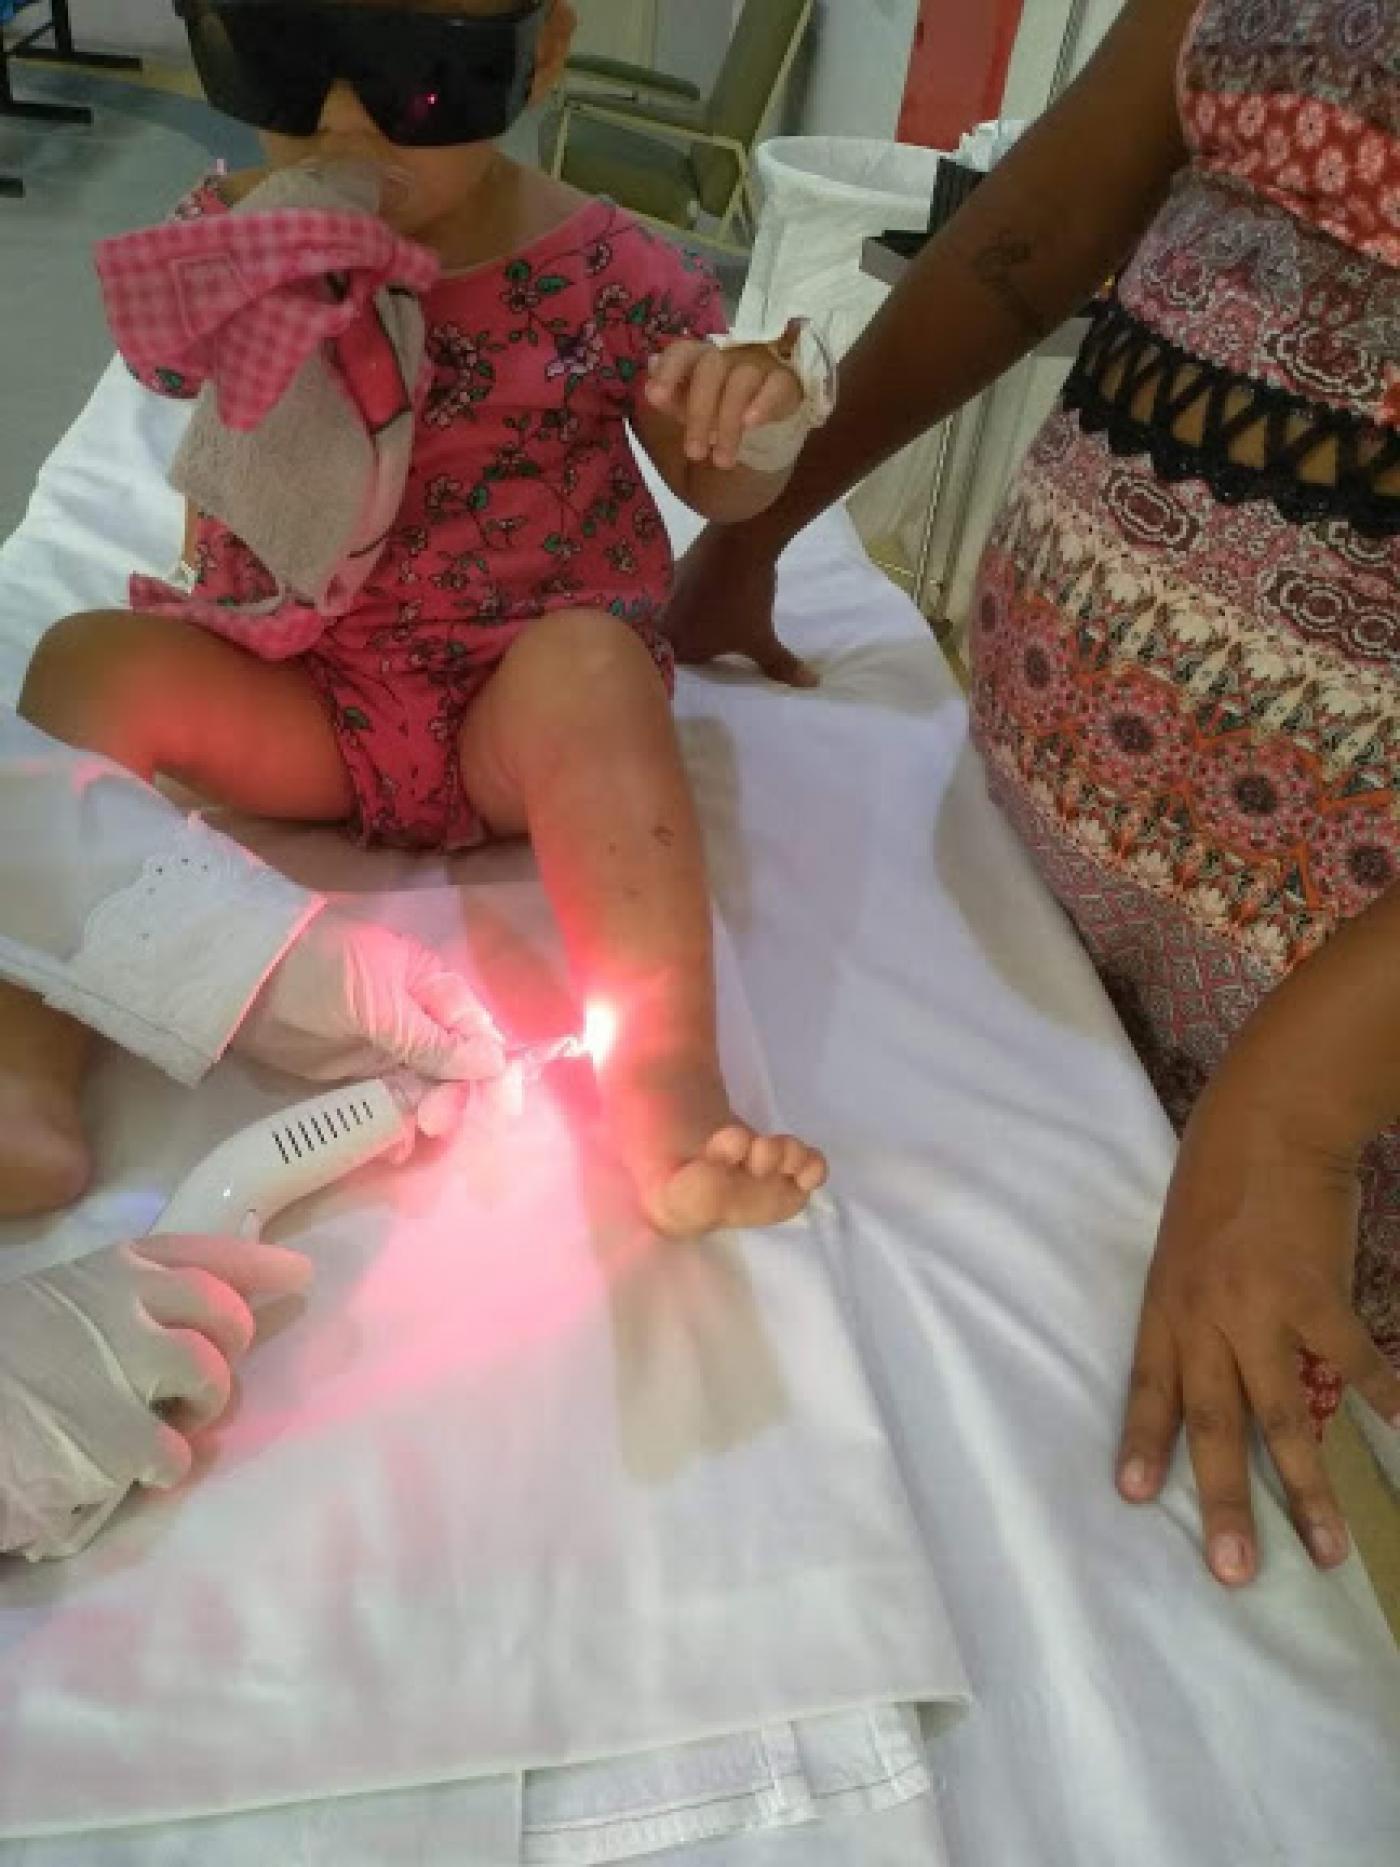 Enfermeira aplica laser terapêutico na perna de criança. #pracegover